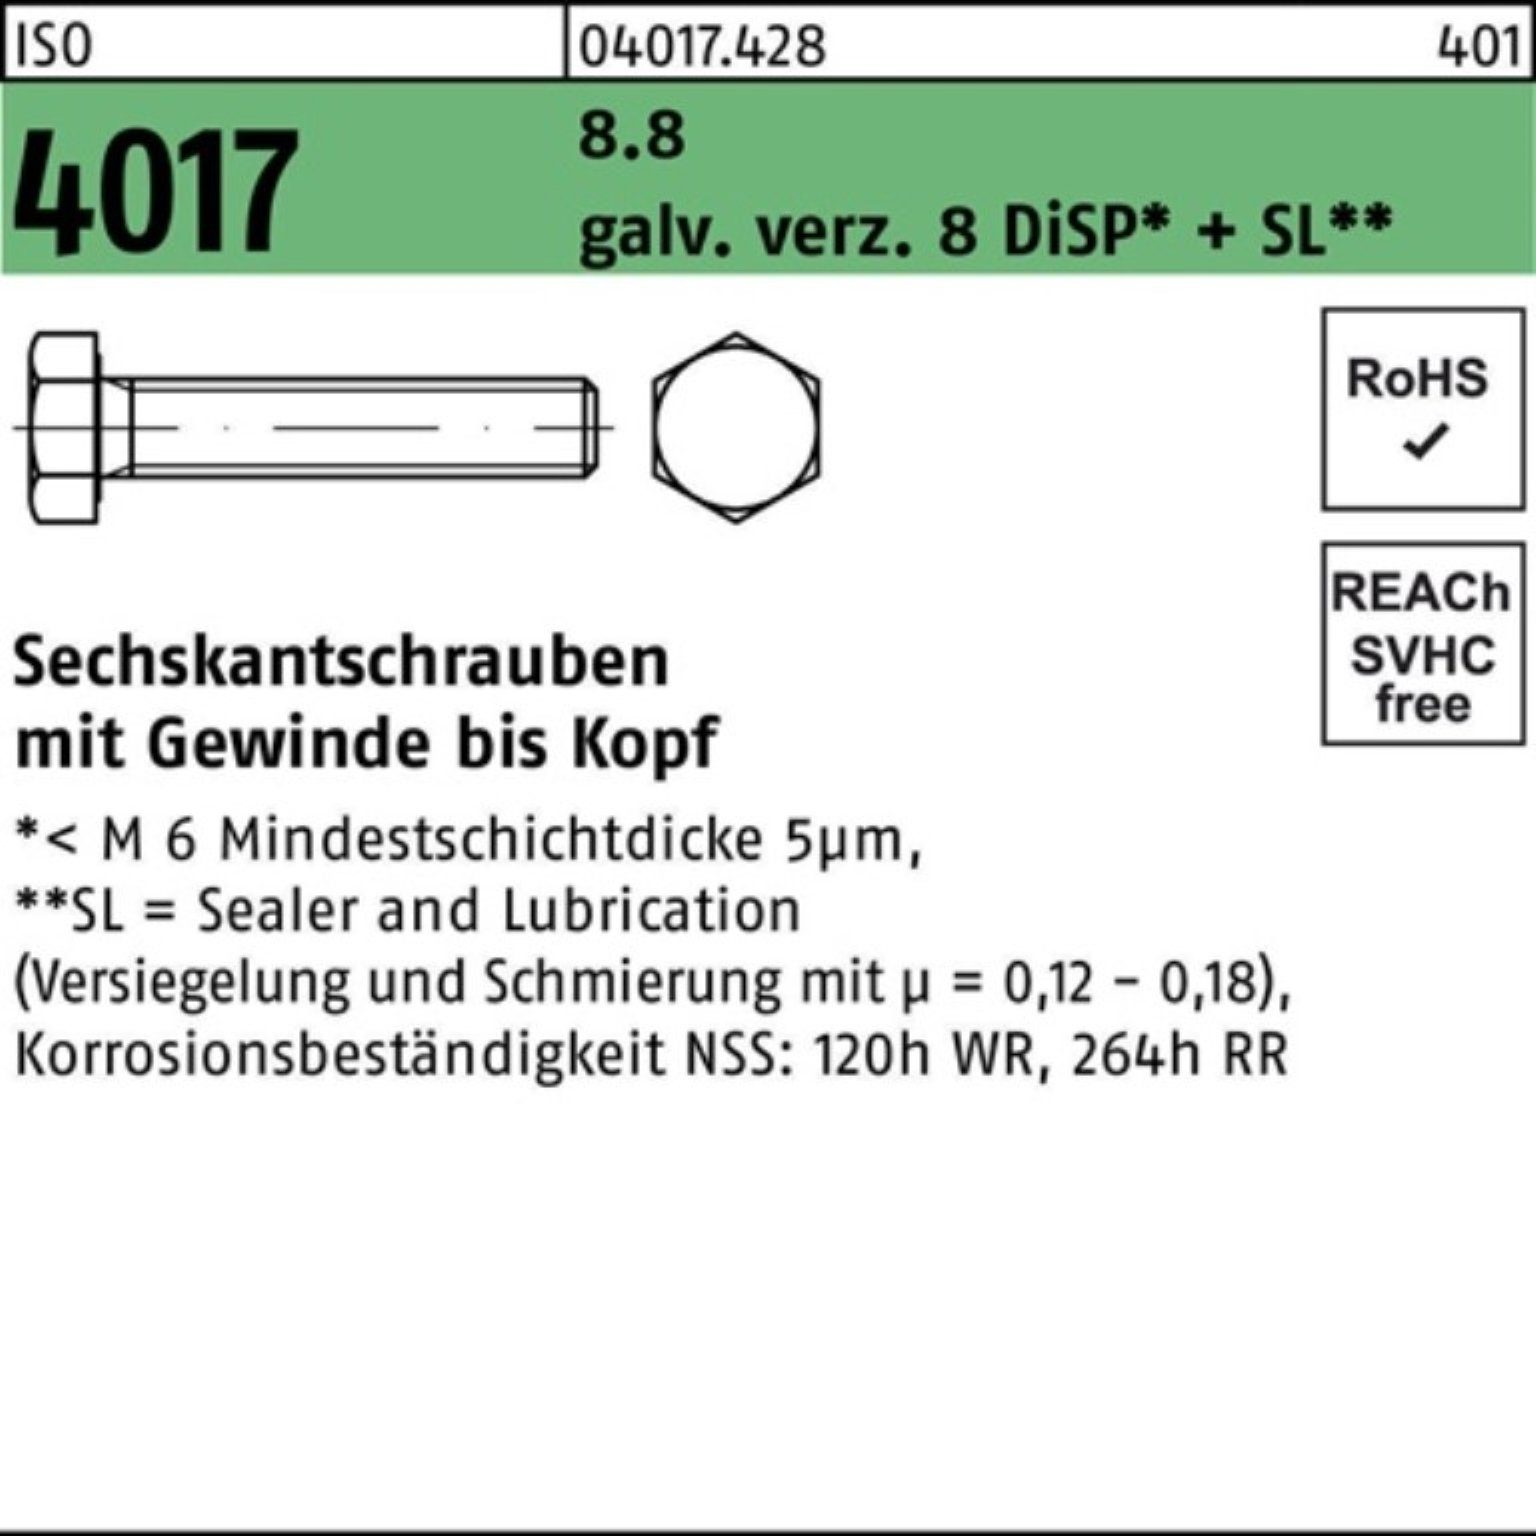 8 Sechskantschraube DiSP+ VG Bufab Sechskantschraube ISO galv.verz. Pack 200er 4017 8.8 50 M8x